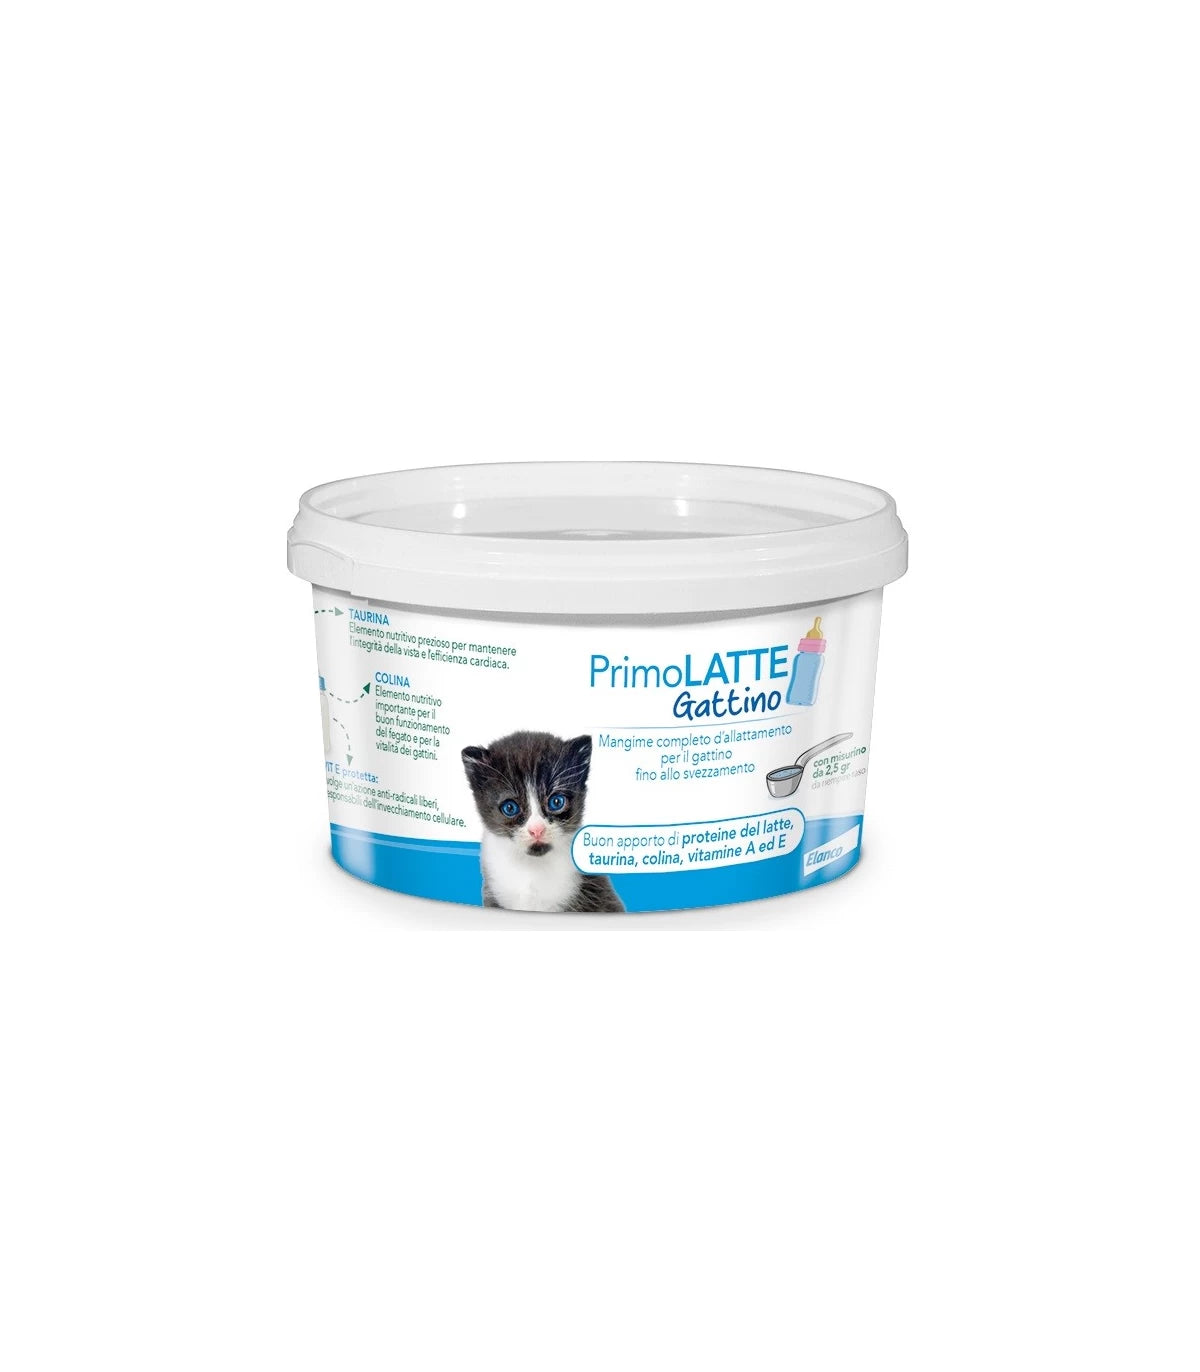 PRIMOLATTE GATTINO (200 gr) – Alimento completo per gattini